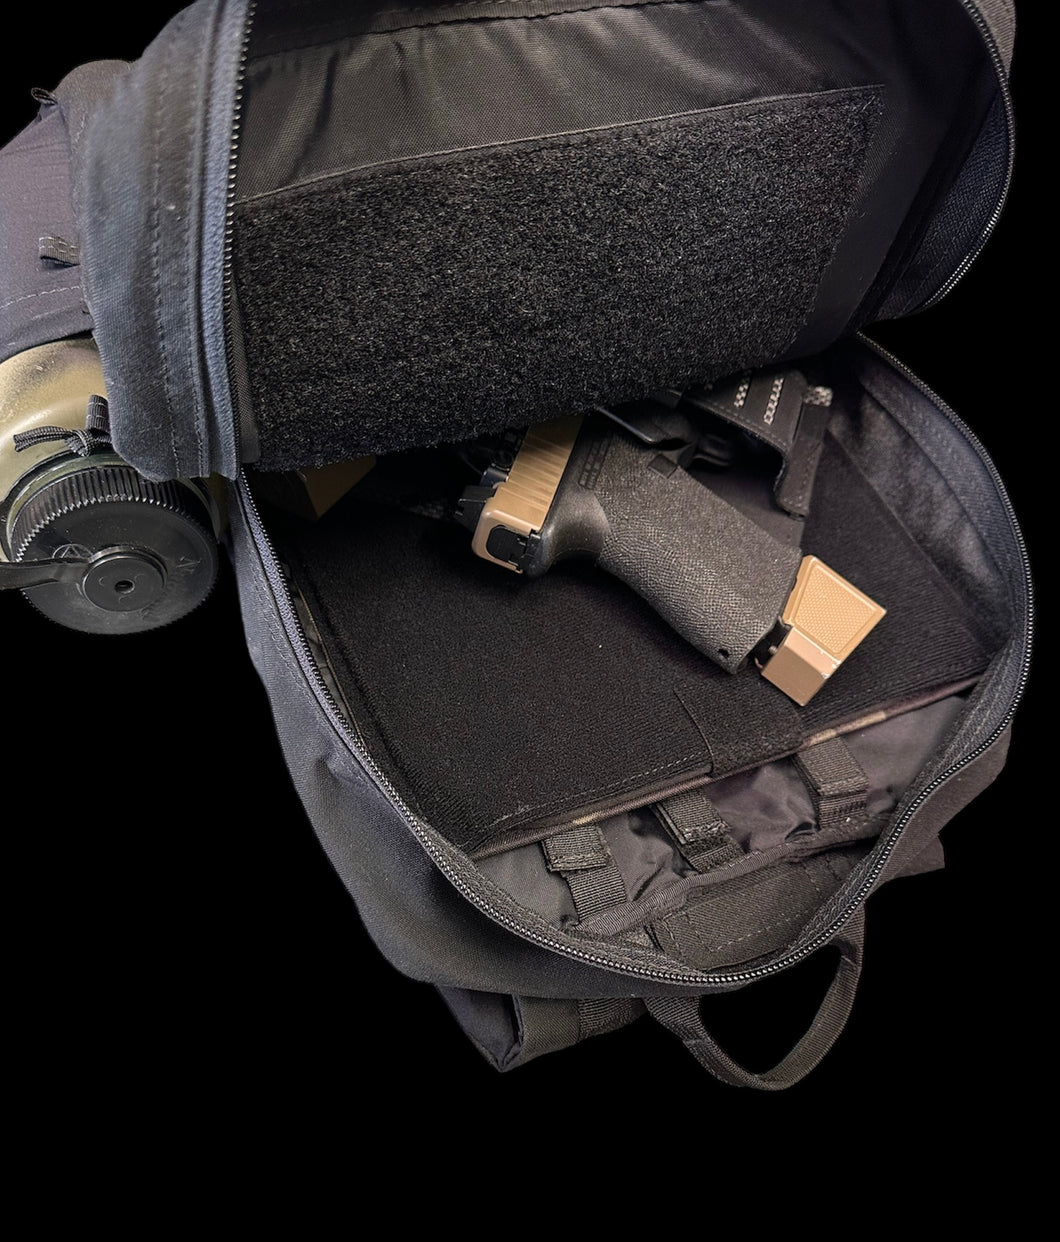 Backpack Armor Sleeve Insert